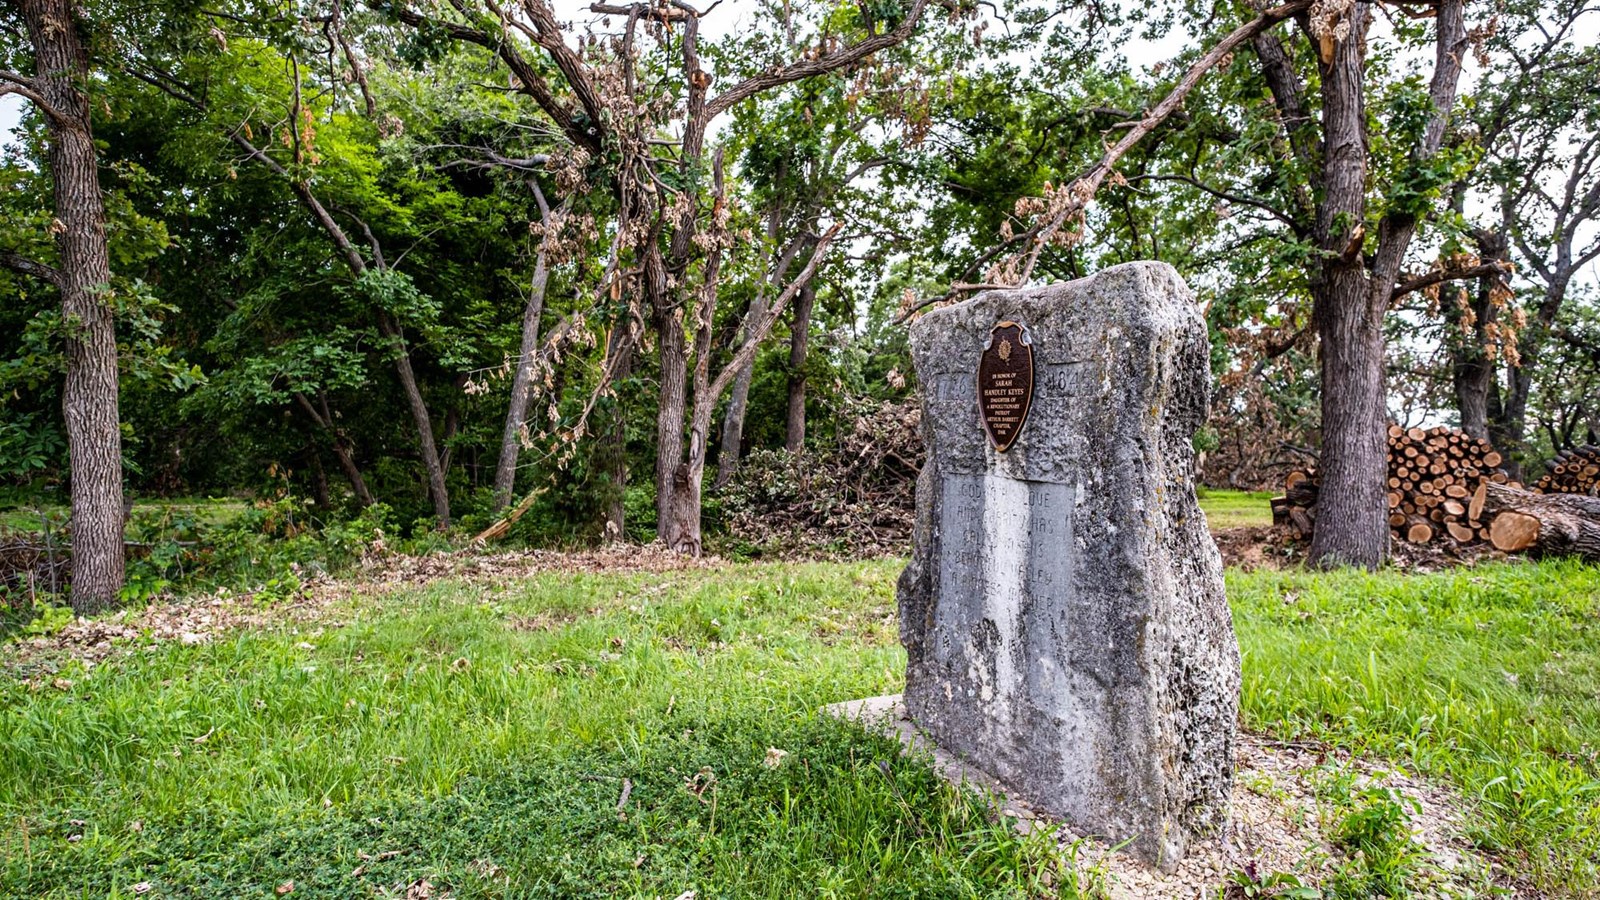 A stone marker in a grassy area.